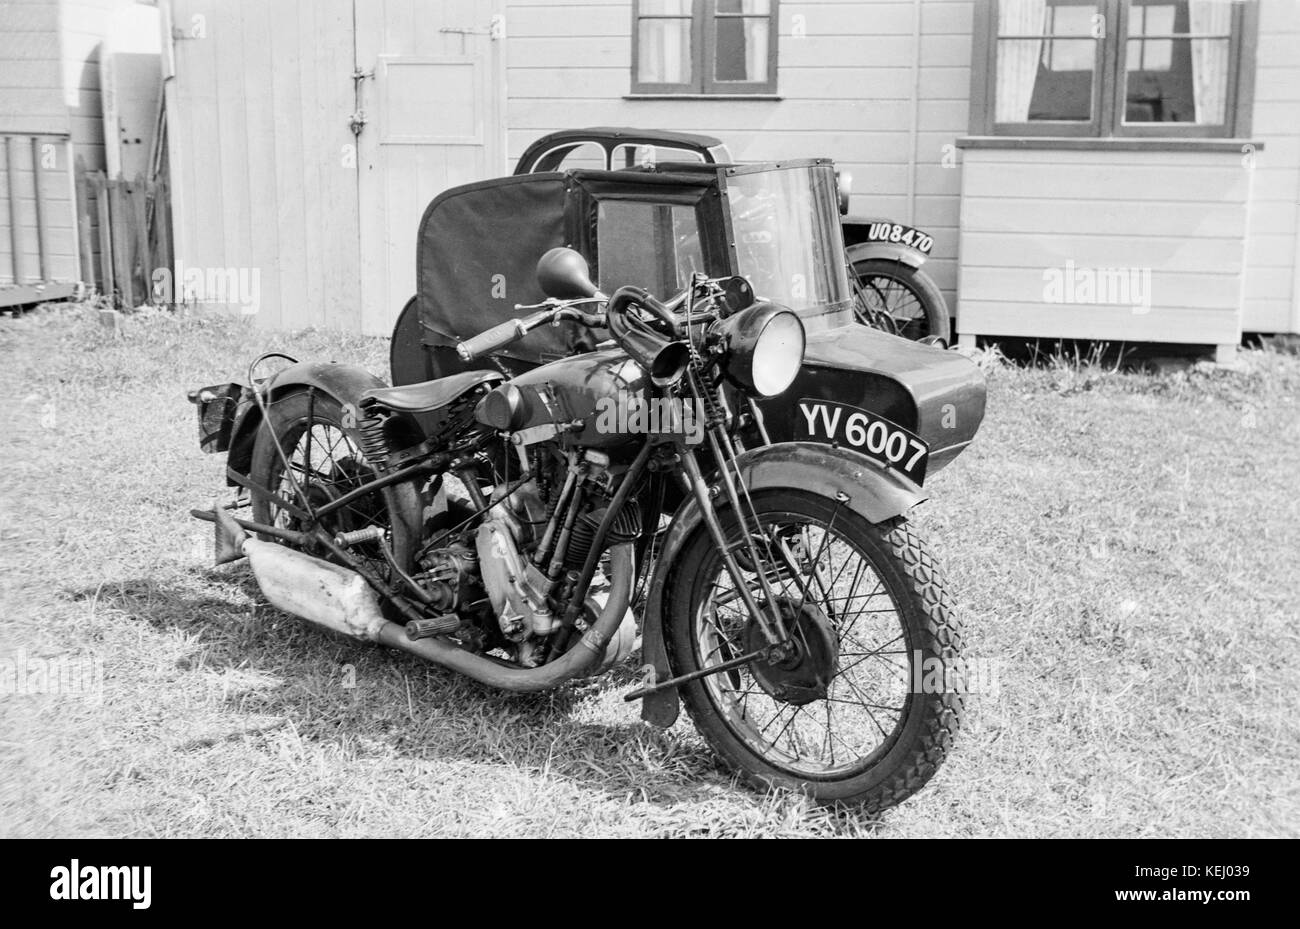 Vintage British BSA Slopers Motorrad mit Beiwagen. Der BSA-S-Serie von Motorrädern, die meisten allgemein bekannt als der BSA Slopers, wurden eine Reihe von Motorräder produziert von der Birmingham Small Arms Company (BSA) von 1927-1935. Im Jahr 1927 ins Leben gerufen, die 493 cc Overhead-Motor wurde schräg, und das Motorrad zum Sattel Tank, die eine niedrige Sitzposition, die Verbesserung der Schwerpunkt und die Verbindungsbearbeitung aktiviert. Die Bezeichnung der neuen S-Serie, ob dieses für slopers, Geschwindigkeit oder stille Stand ist unbekannt, aber Slopers wurde der Begriff durch Motorradfahrer verwendet und damit auch die BSA für Marketing übernommen. Stockfoto